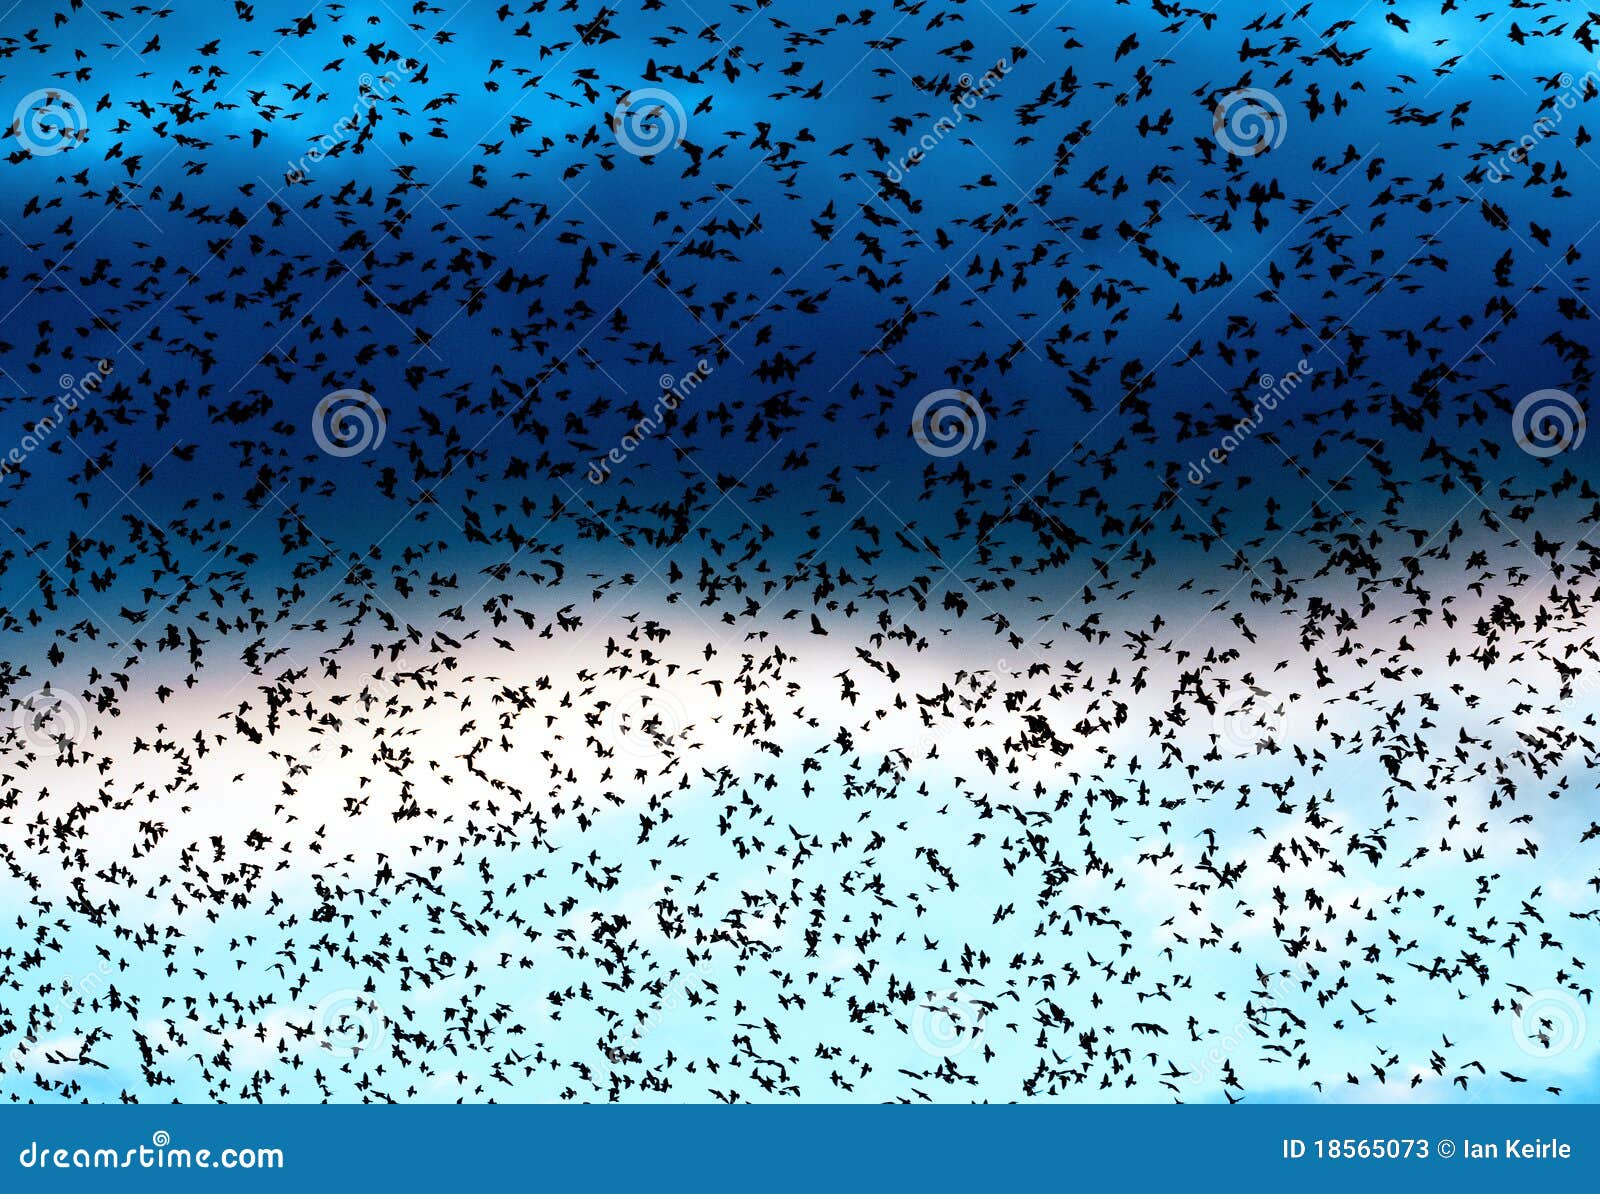 starling flock